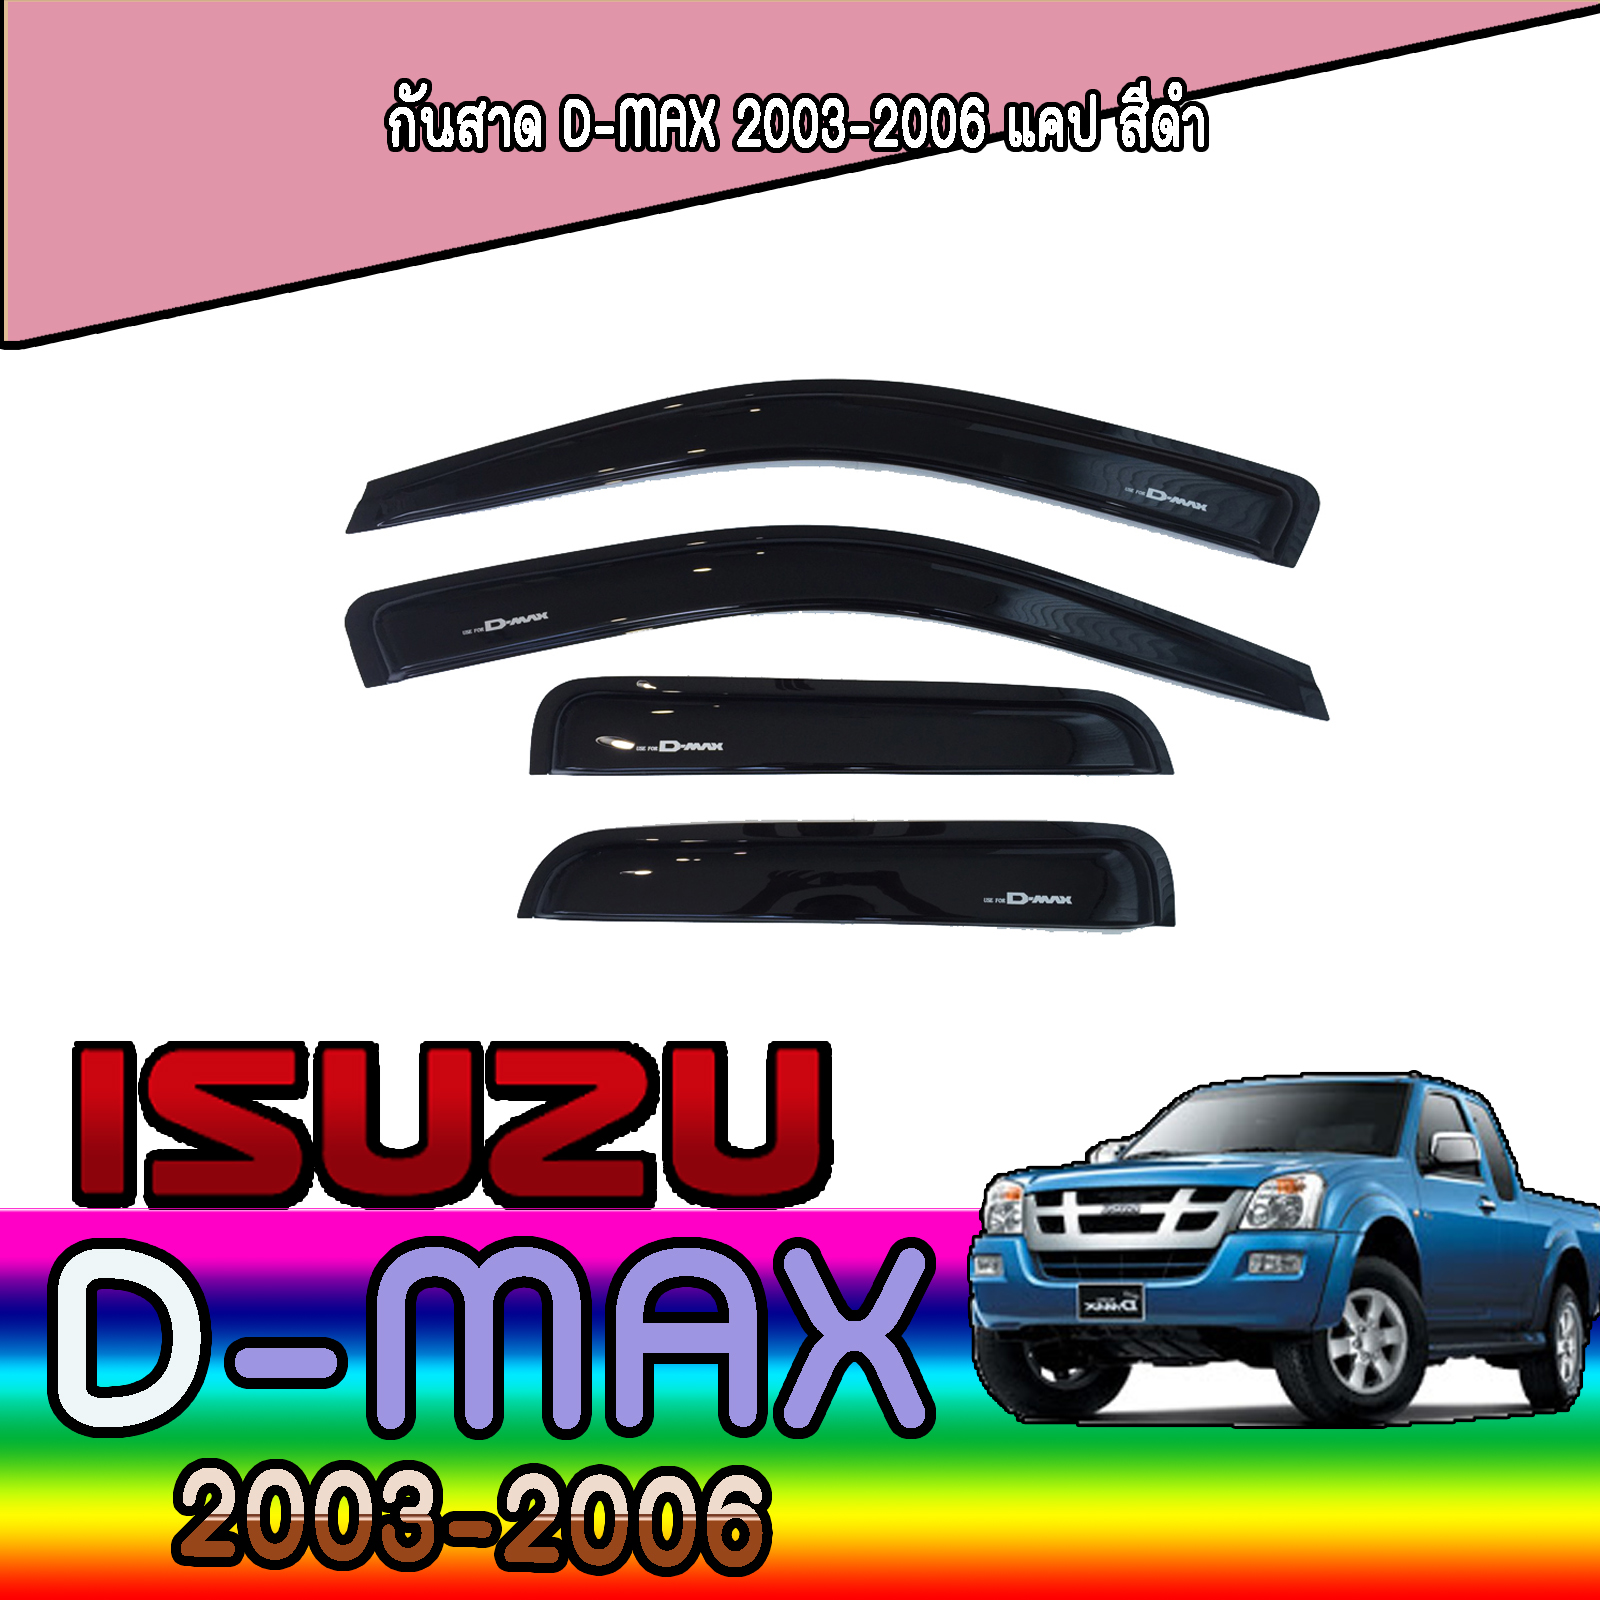 อีซูซุ ดีแมค ISUZU D-max กันสาดประตู 2002-2011  สำหรับ 2 ประตูแคบ จำนวน 4 ชิ้น อีซูซุ อีซุซุ อิซูซุ อิซุซุ d max dmax ดีแมก ดีแม็ก ดีแม็กซ์ 2002 2003 2004 20